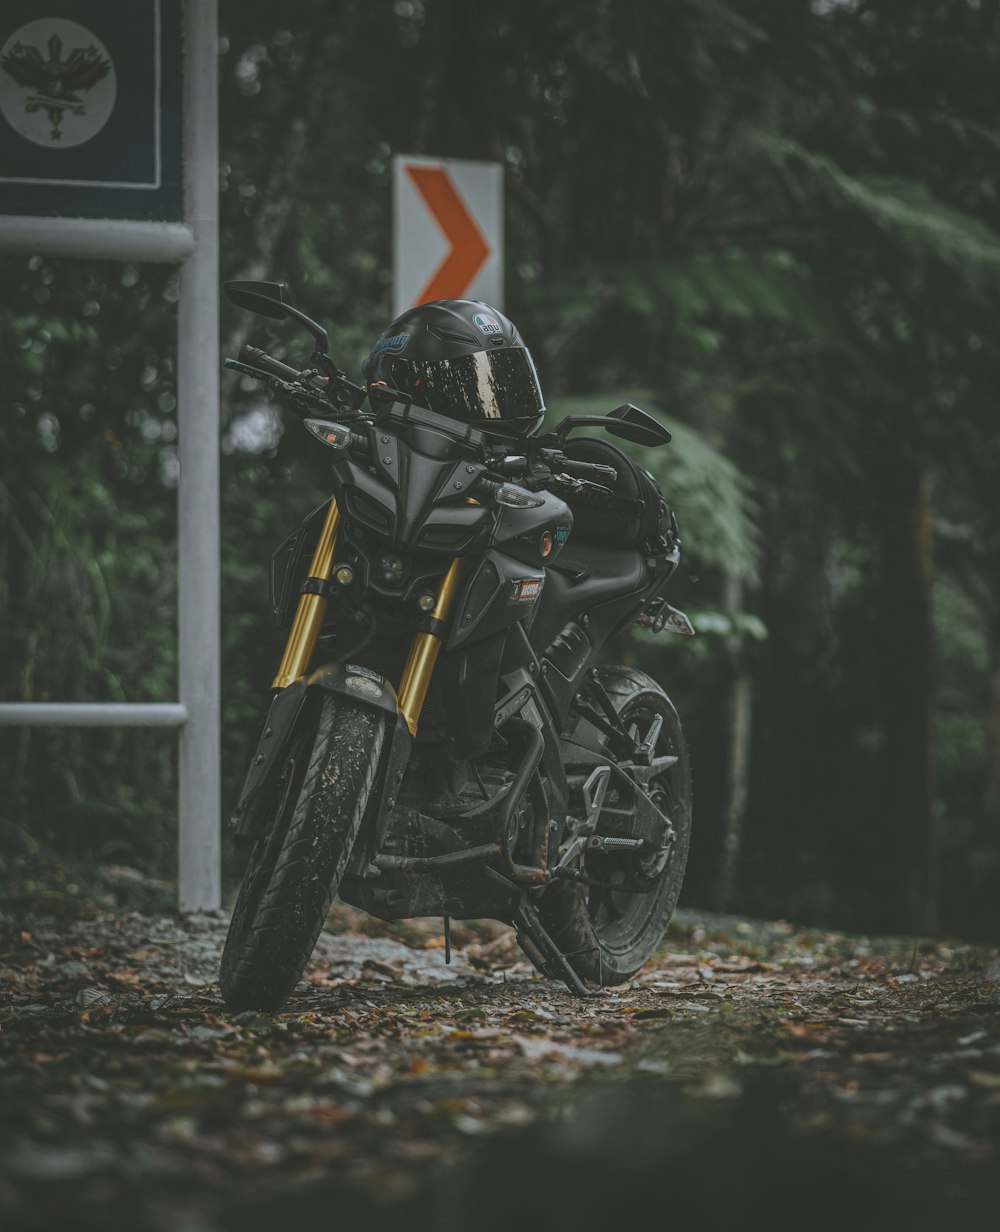 motocicleta preta estacionada ao lado do poste cinza